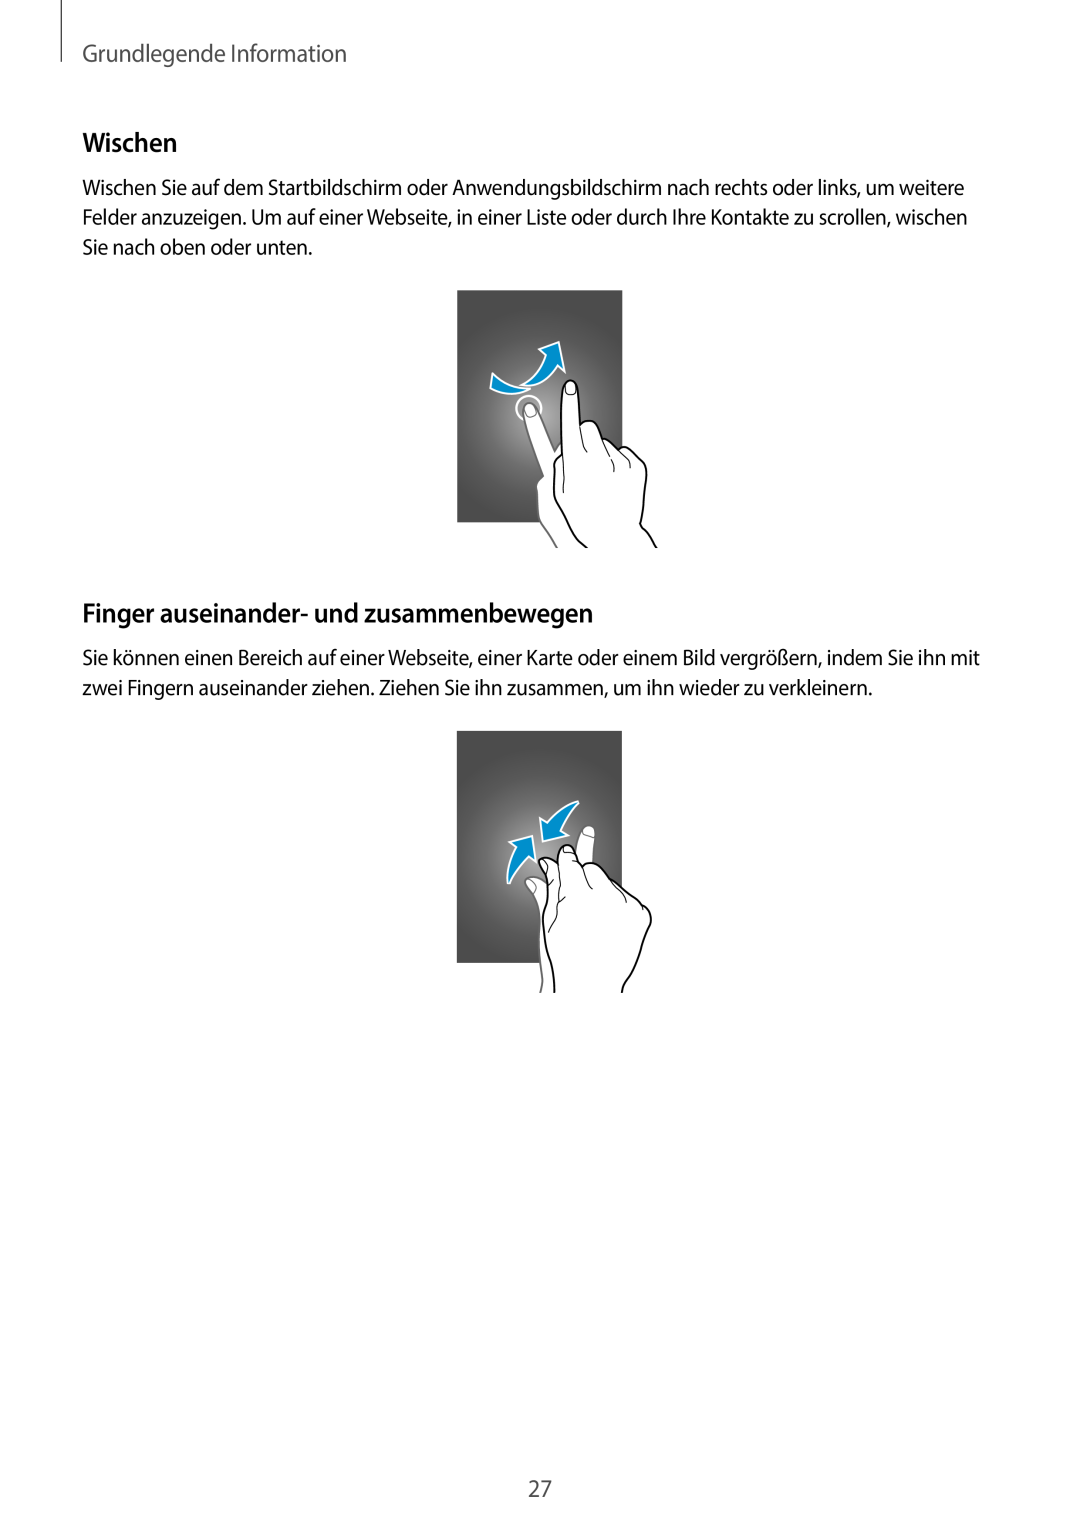 Samsung SM-C1010ZWAEUR, SM-C1010ZWAXEO manual Wischen, Finger auseinander- und zusammenbewegen, Grundlegende Information 